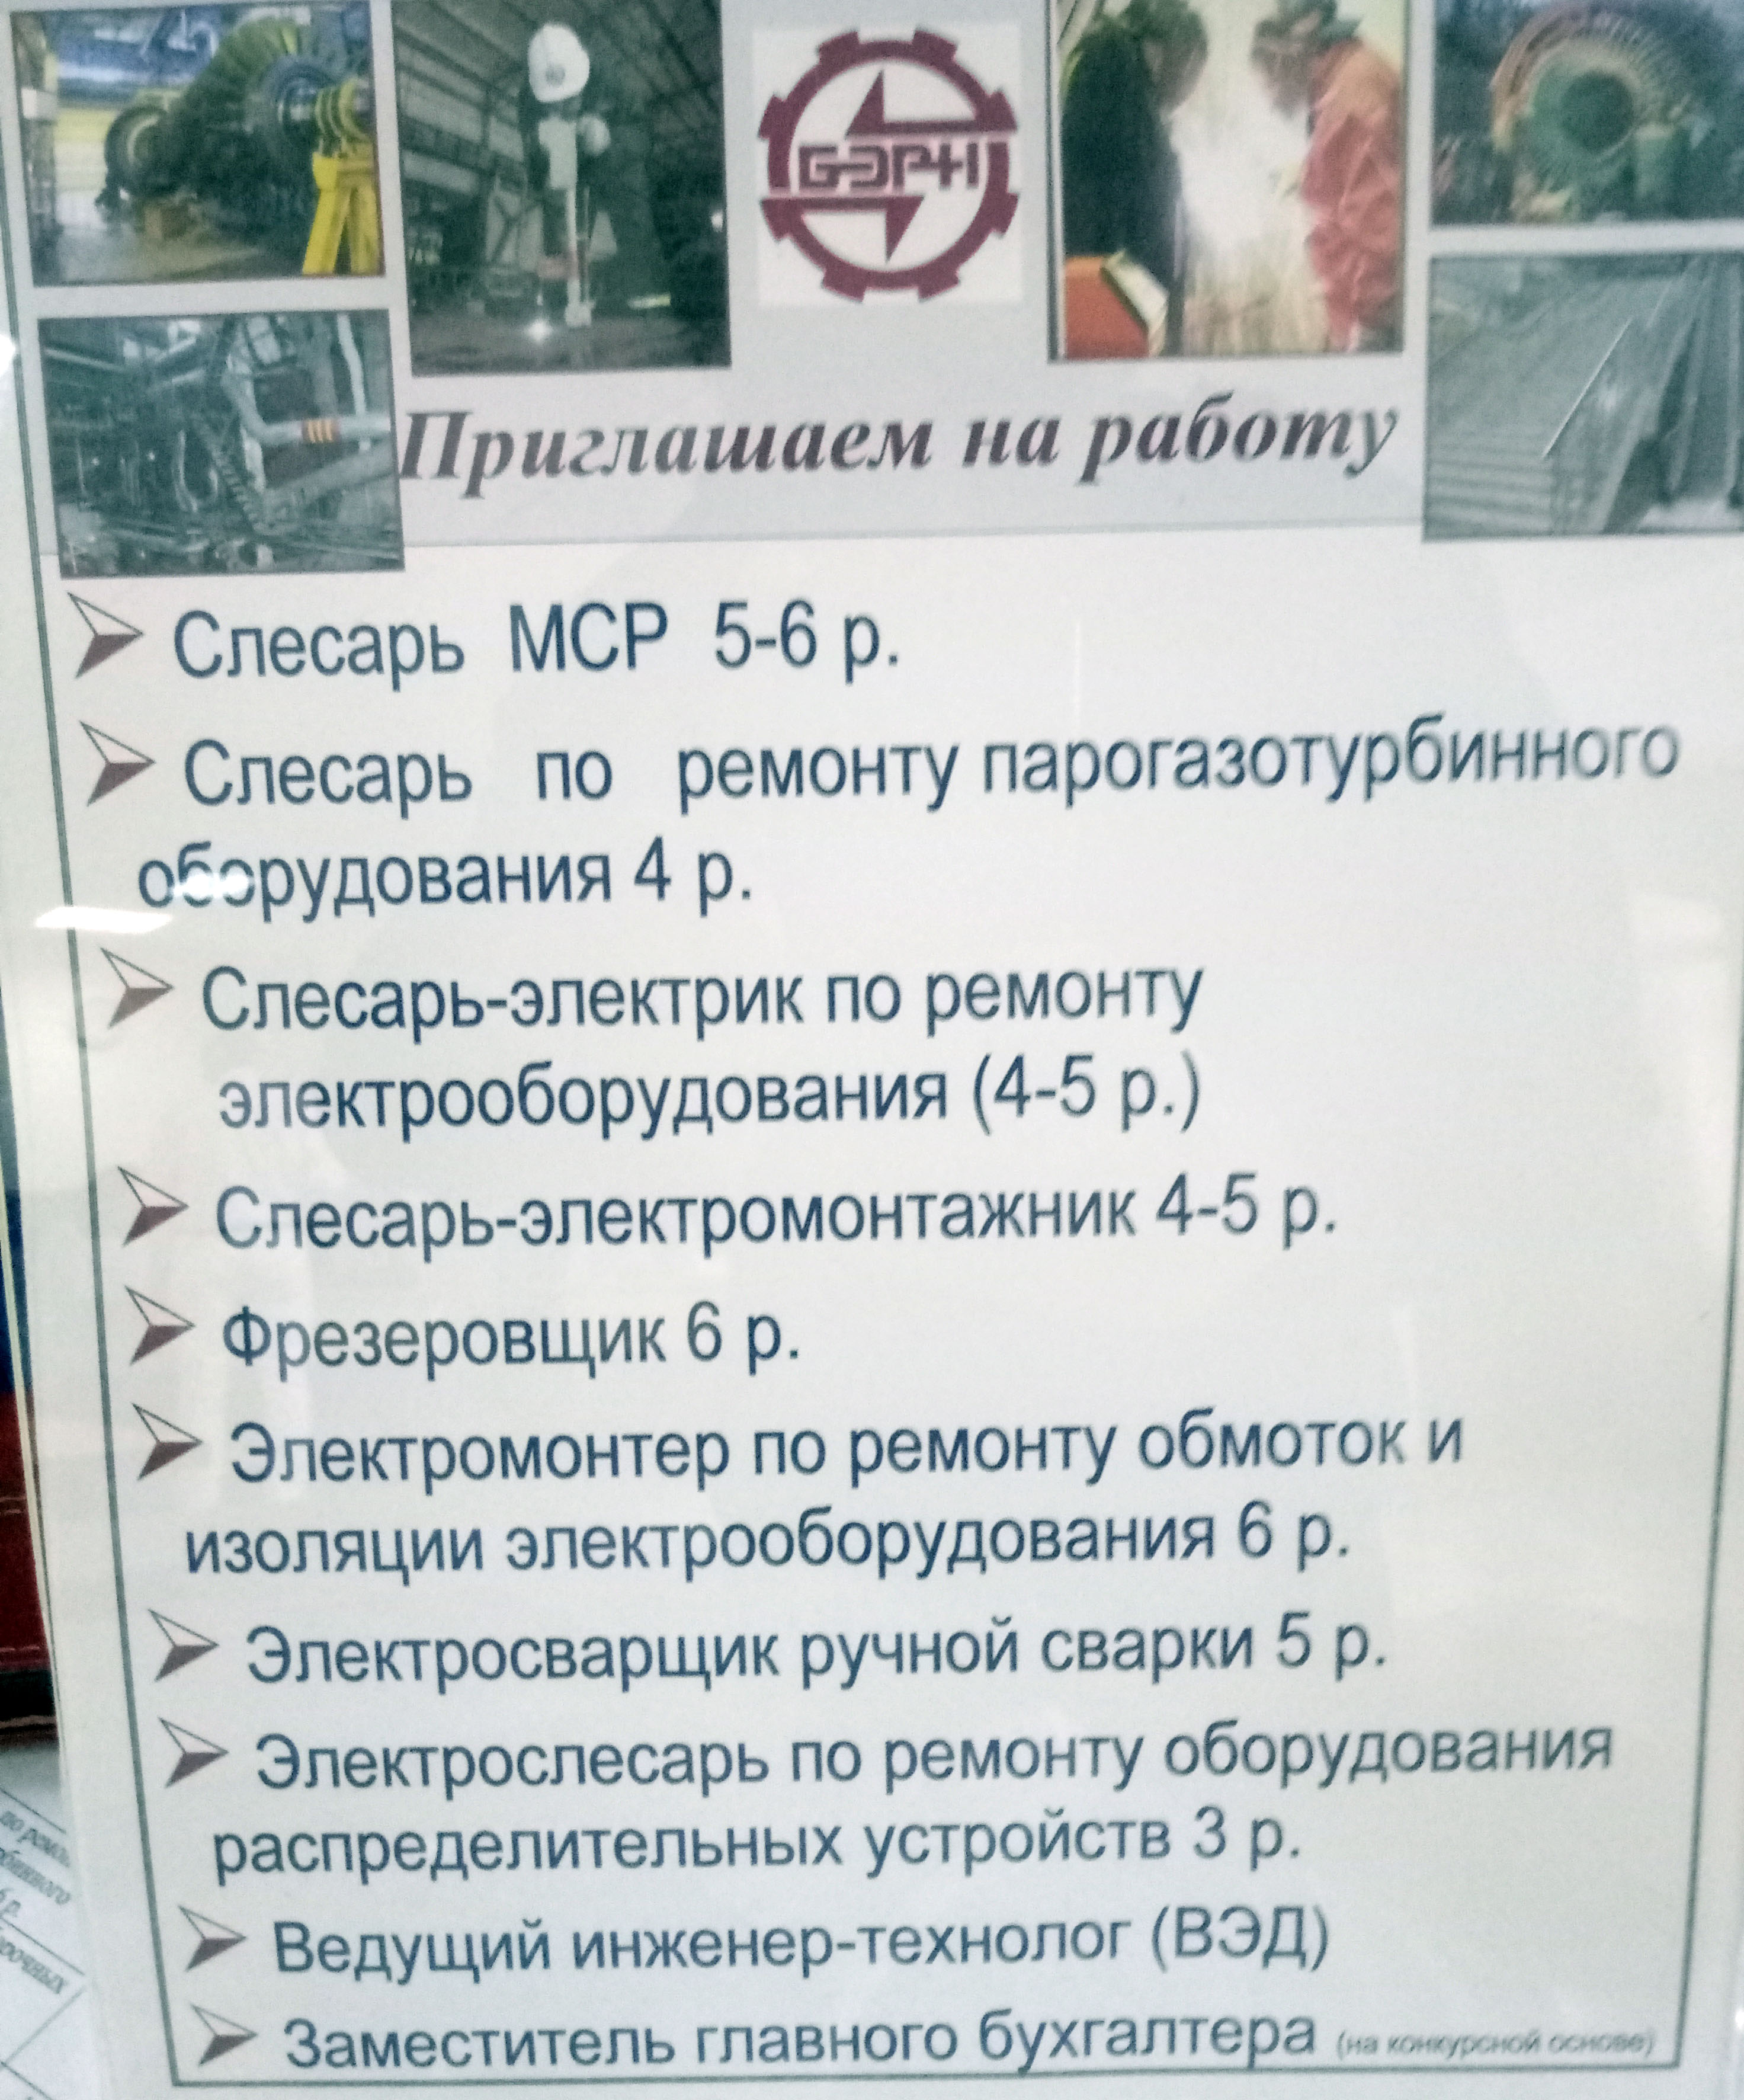 На кірмашы вакансій няма працы за 500$, людзі шукаюць хаця б за 500 рублёў